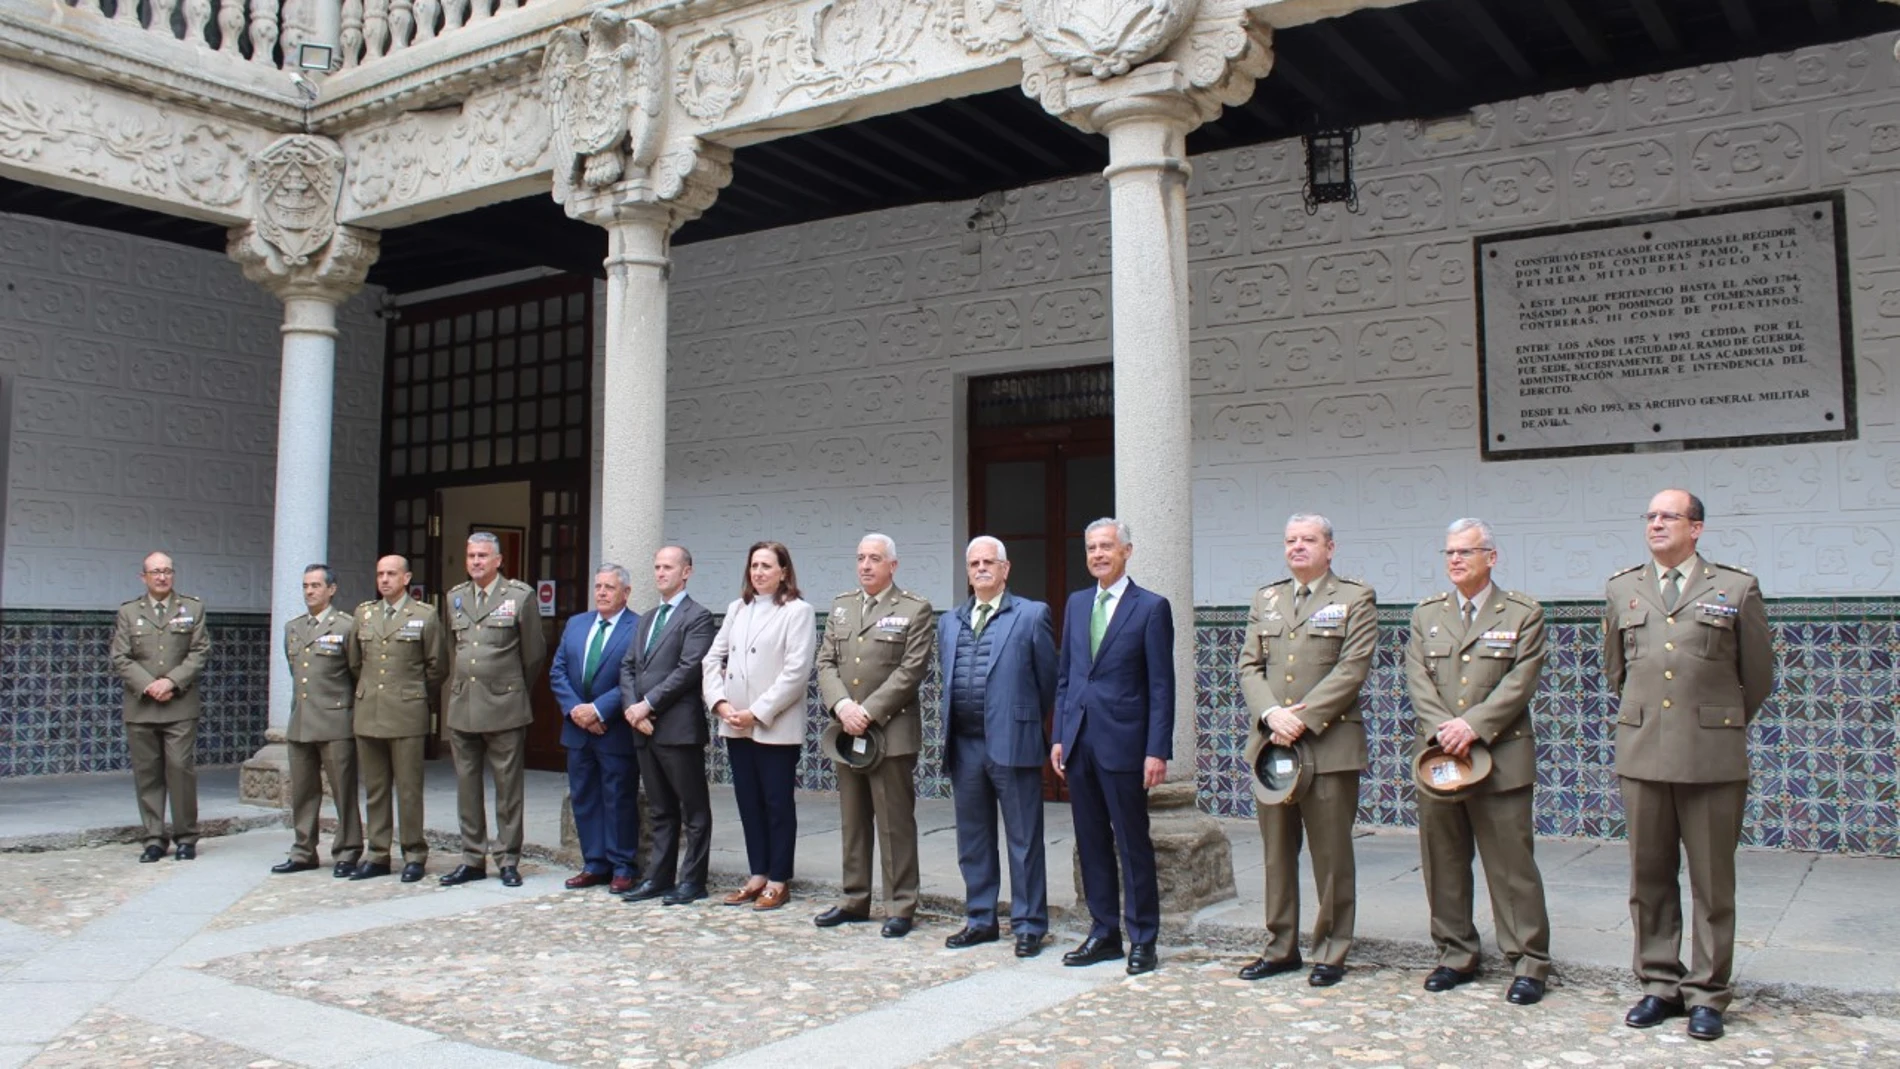 Acuerdo entre Fundación Iberdrola España y el Museo del Ejército de Ávila para restaurar el patio del Palacio de Polentinos